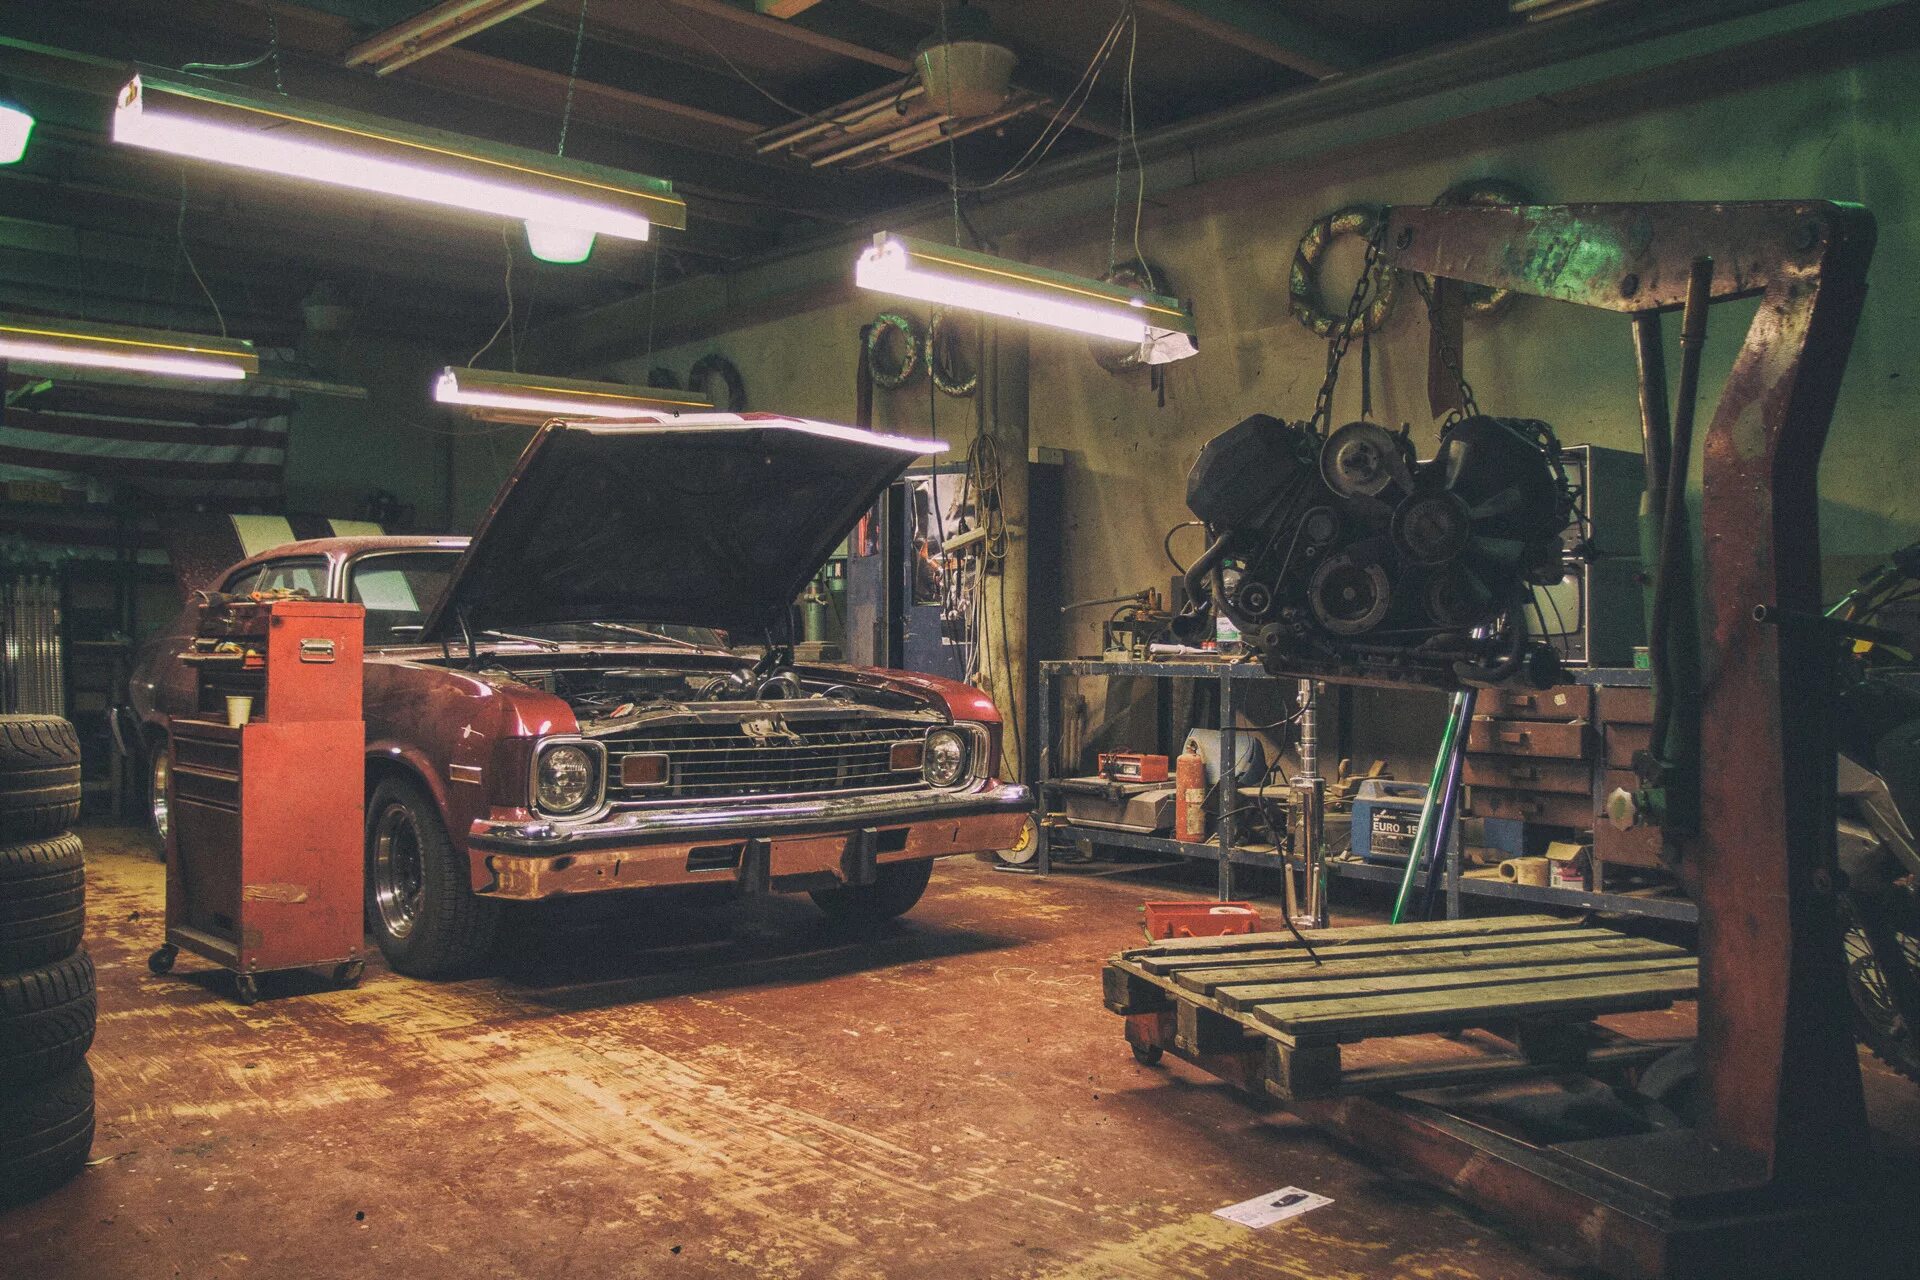 В феврале в мастерской отремонтировали. Автомастерская в гараже. Мастерская машин. Гараж для автомобиля. Ремонтная мастерская автомобилей.